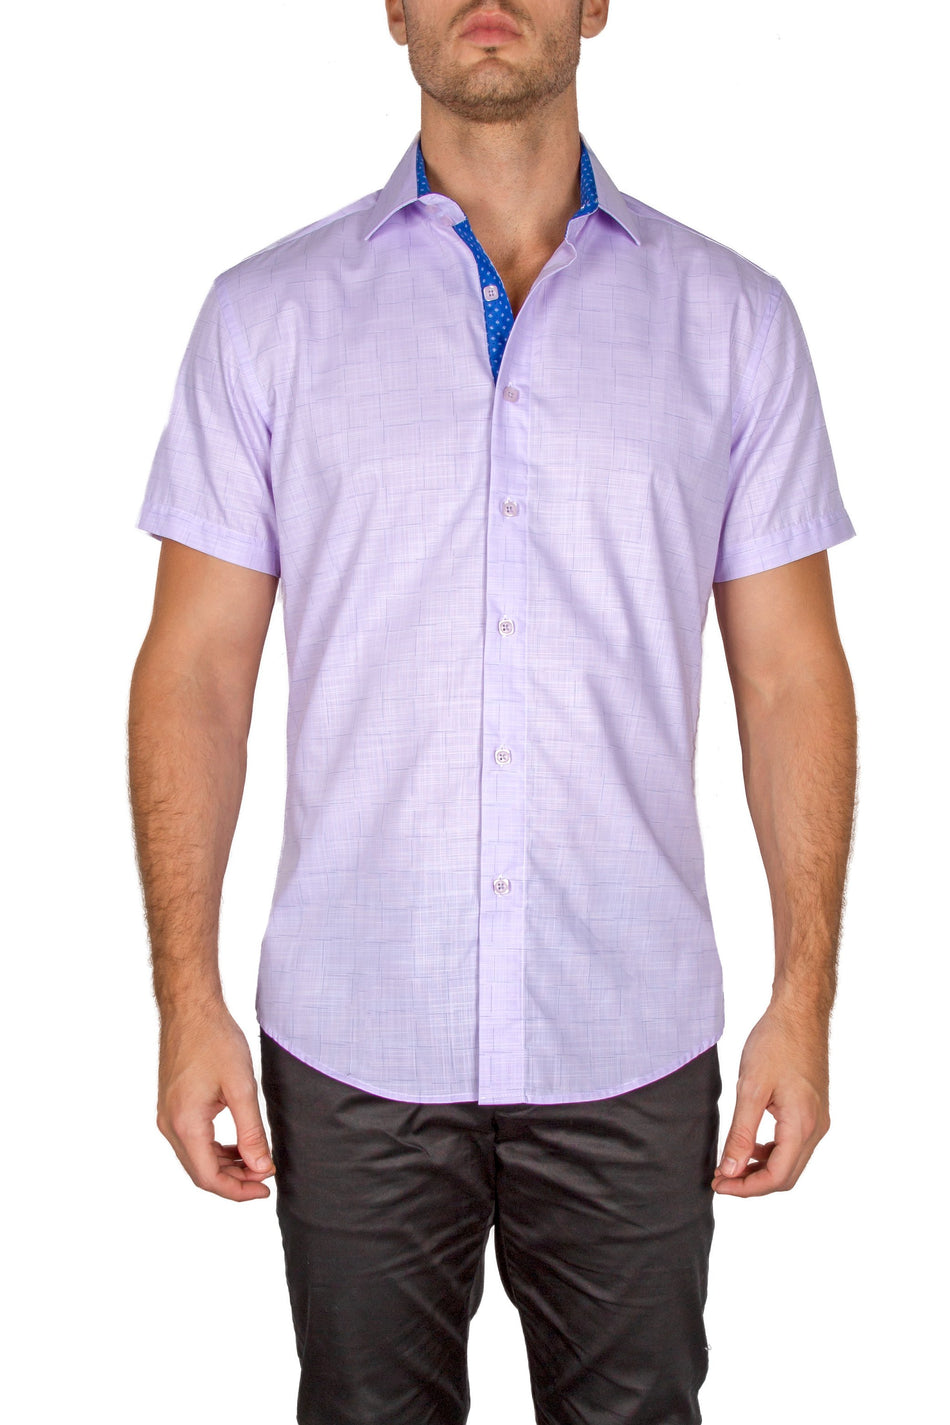 BESPOKE - Mens Lilac Short Sleeve Dress Shirt - Modern Fit - 182114 ...